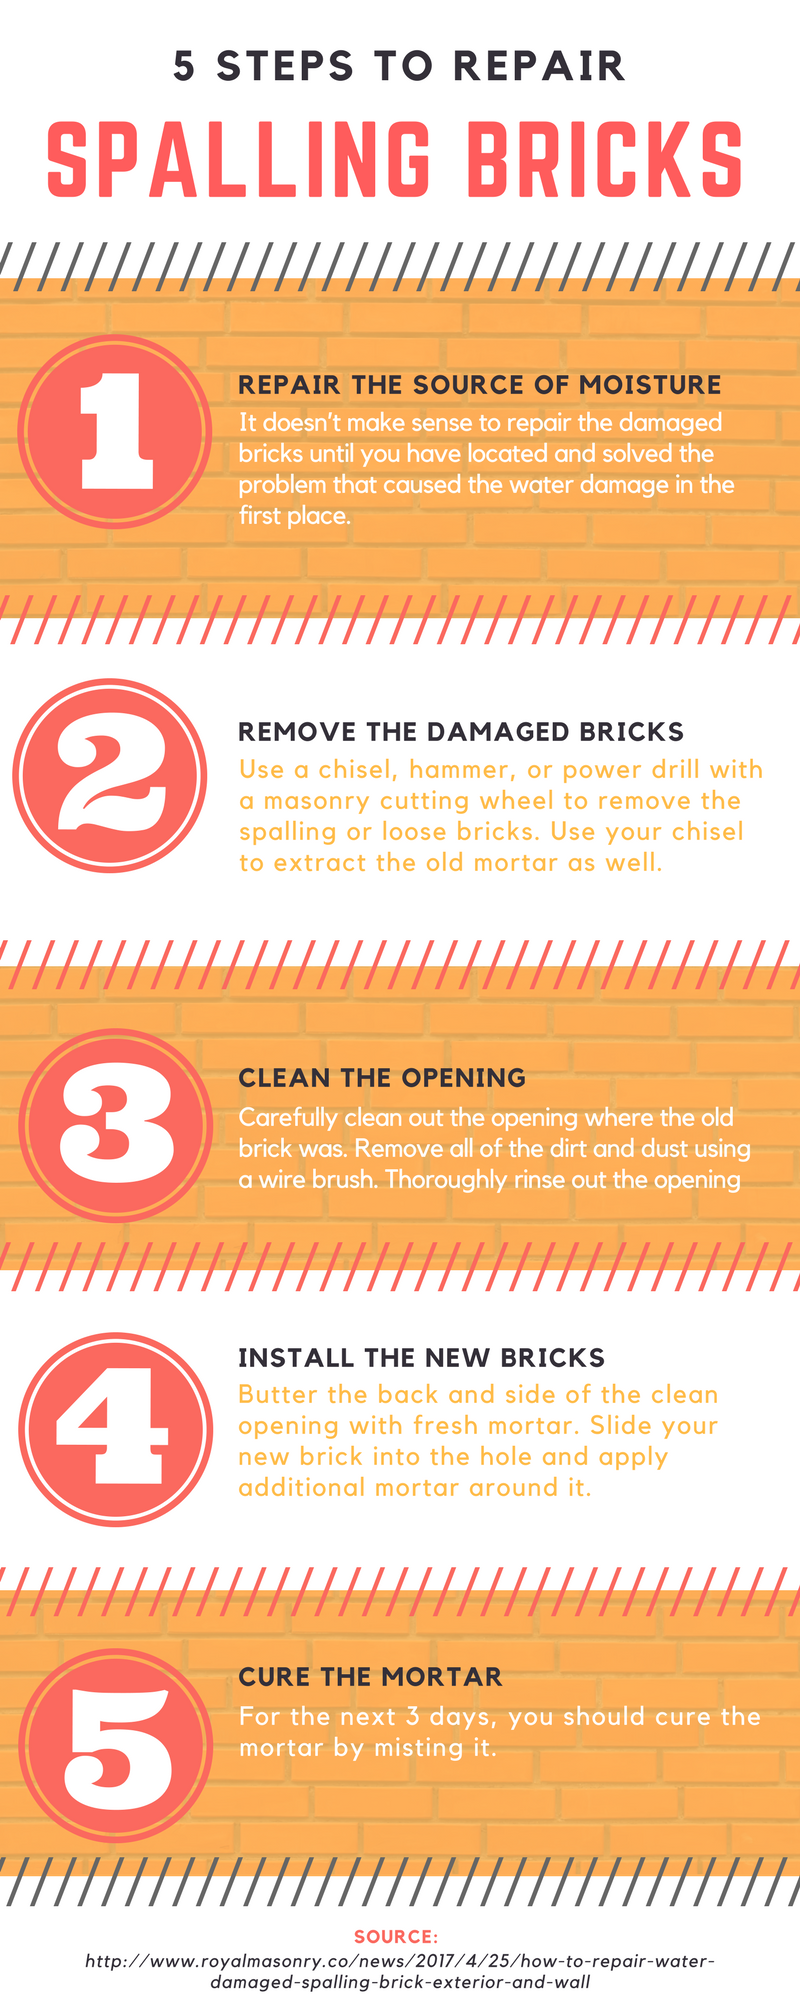 How to Repair Water Damaged Spalling Bricks – 5 Easy Steps (2)